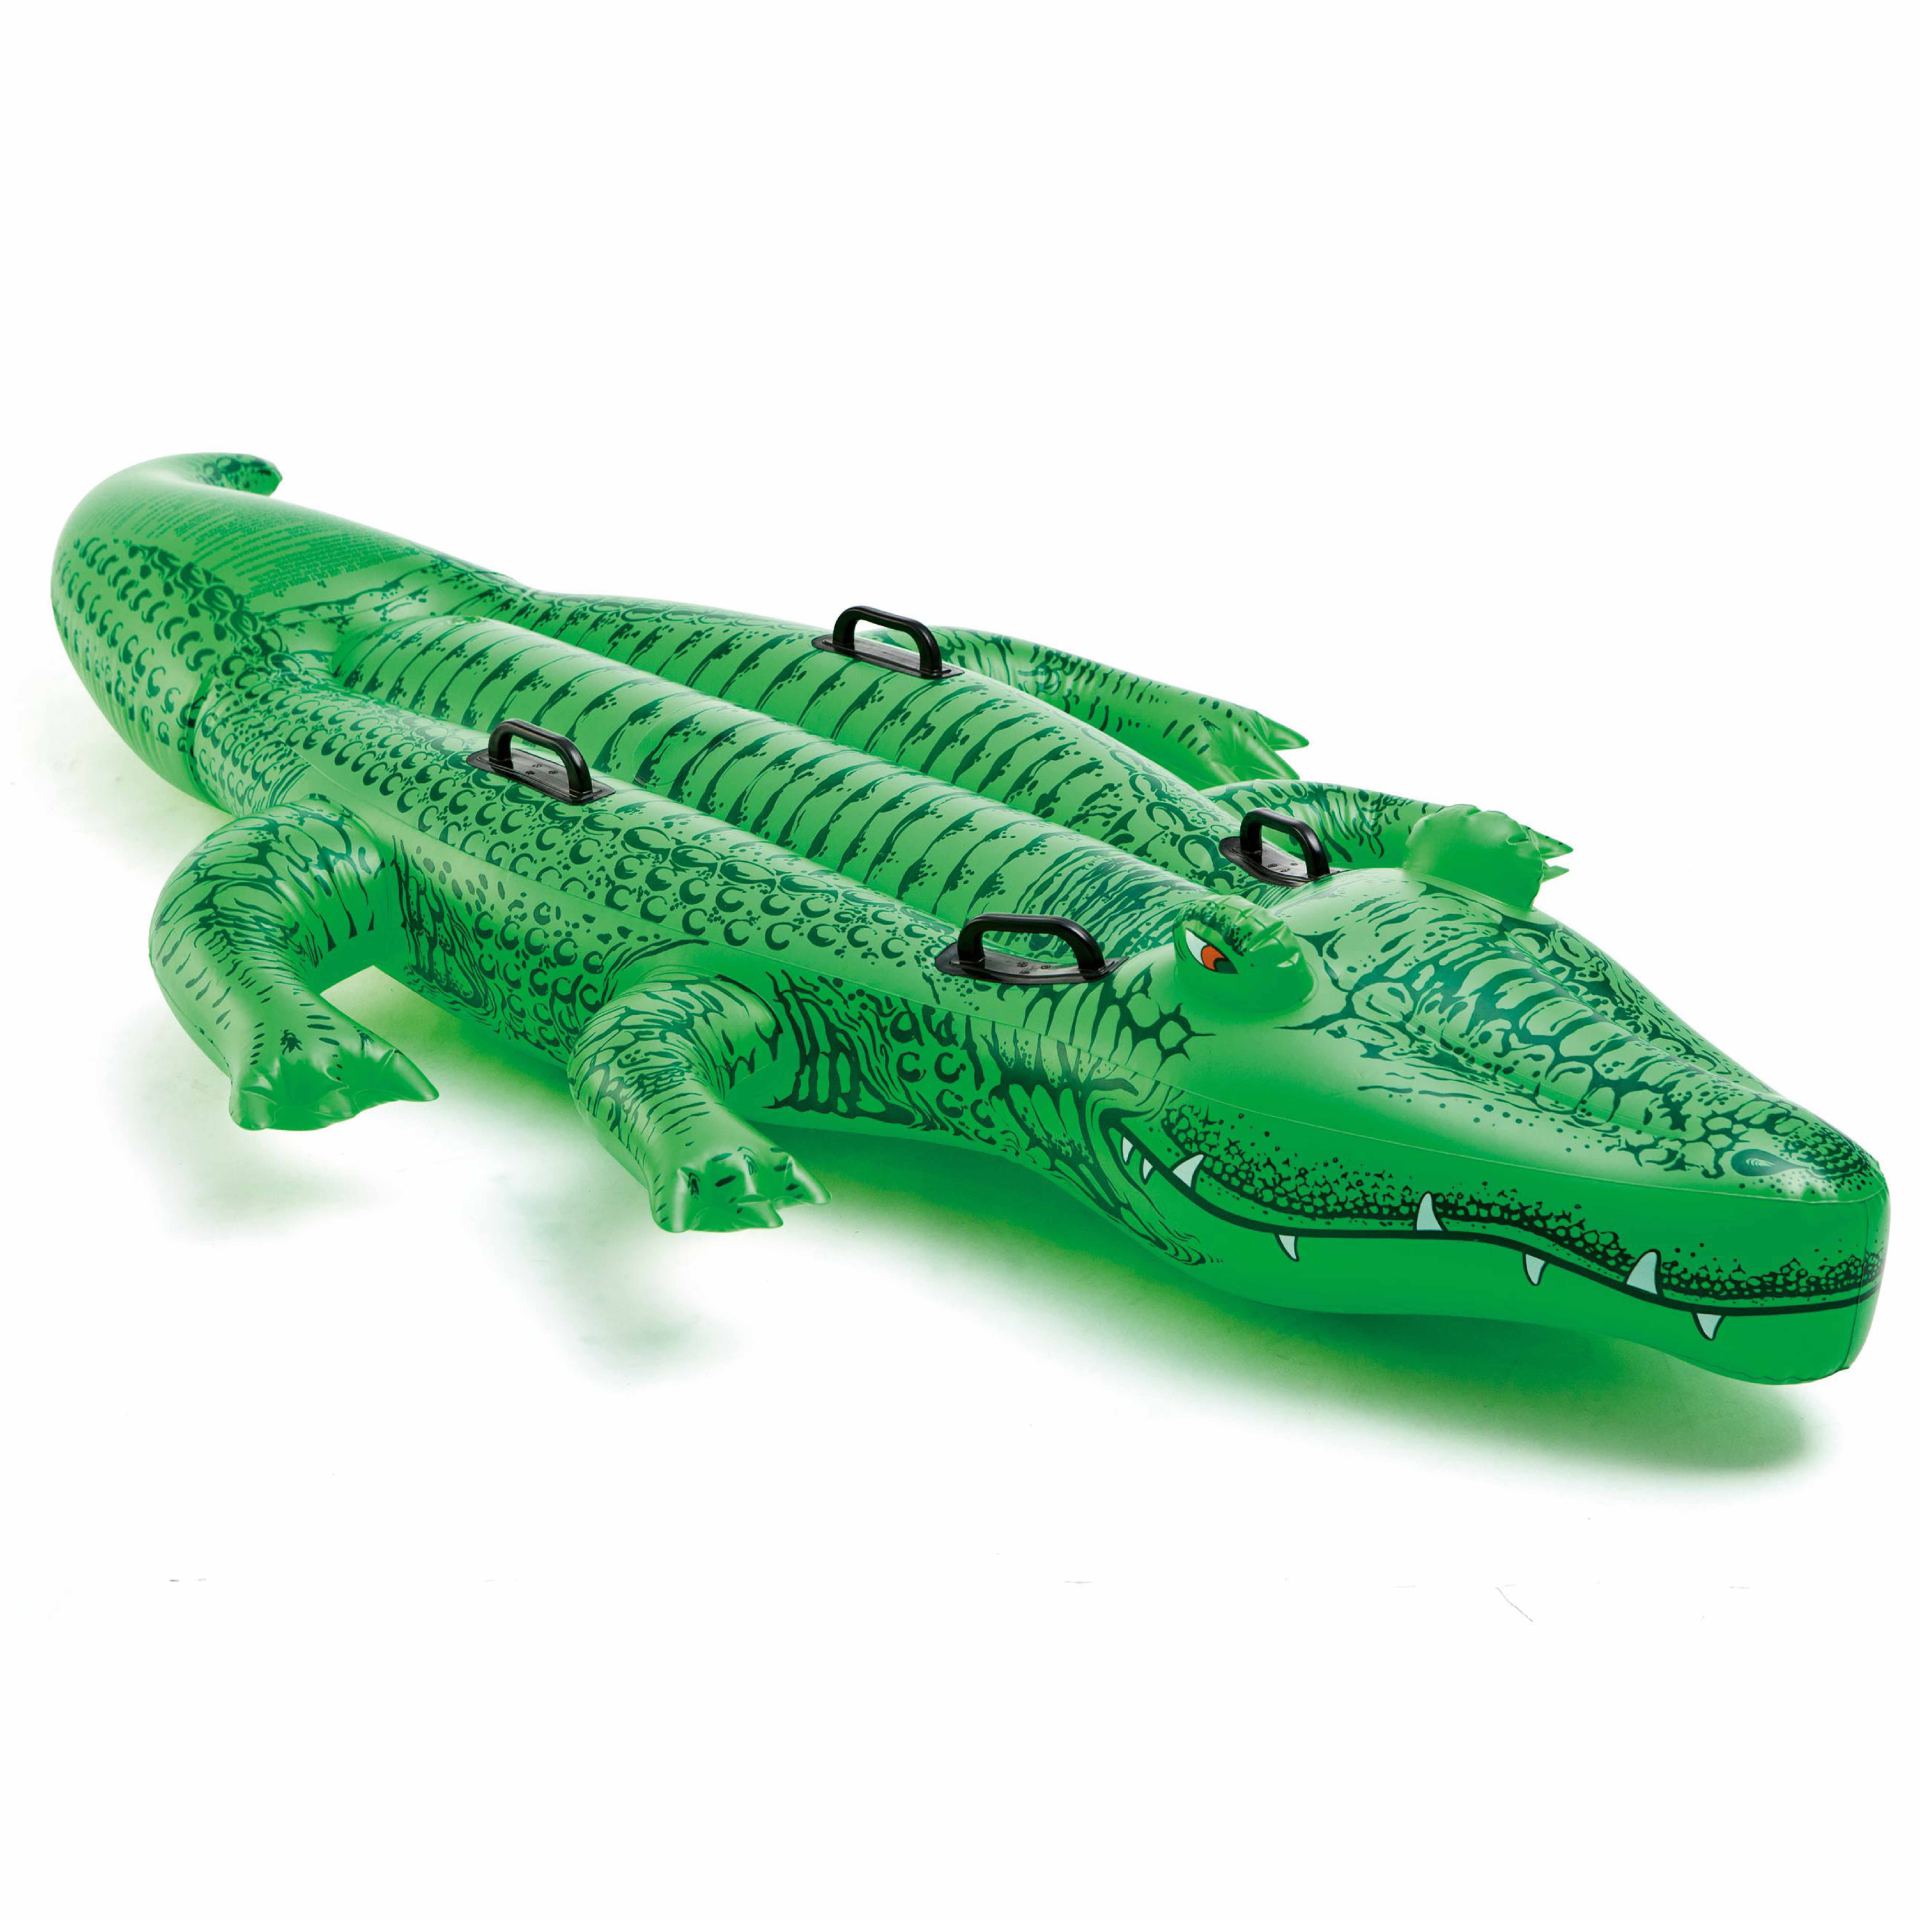 grote krokodil ride-on intex